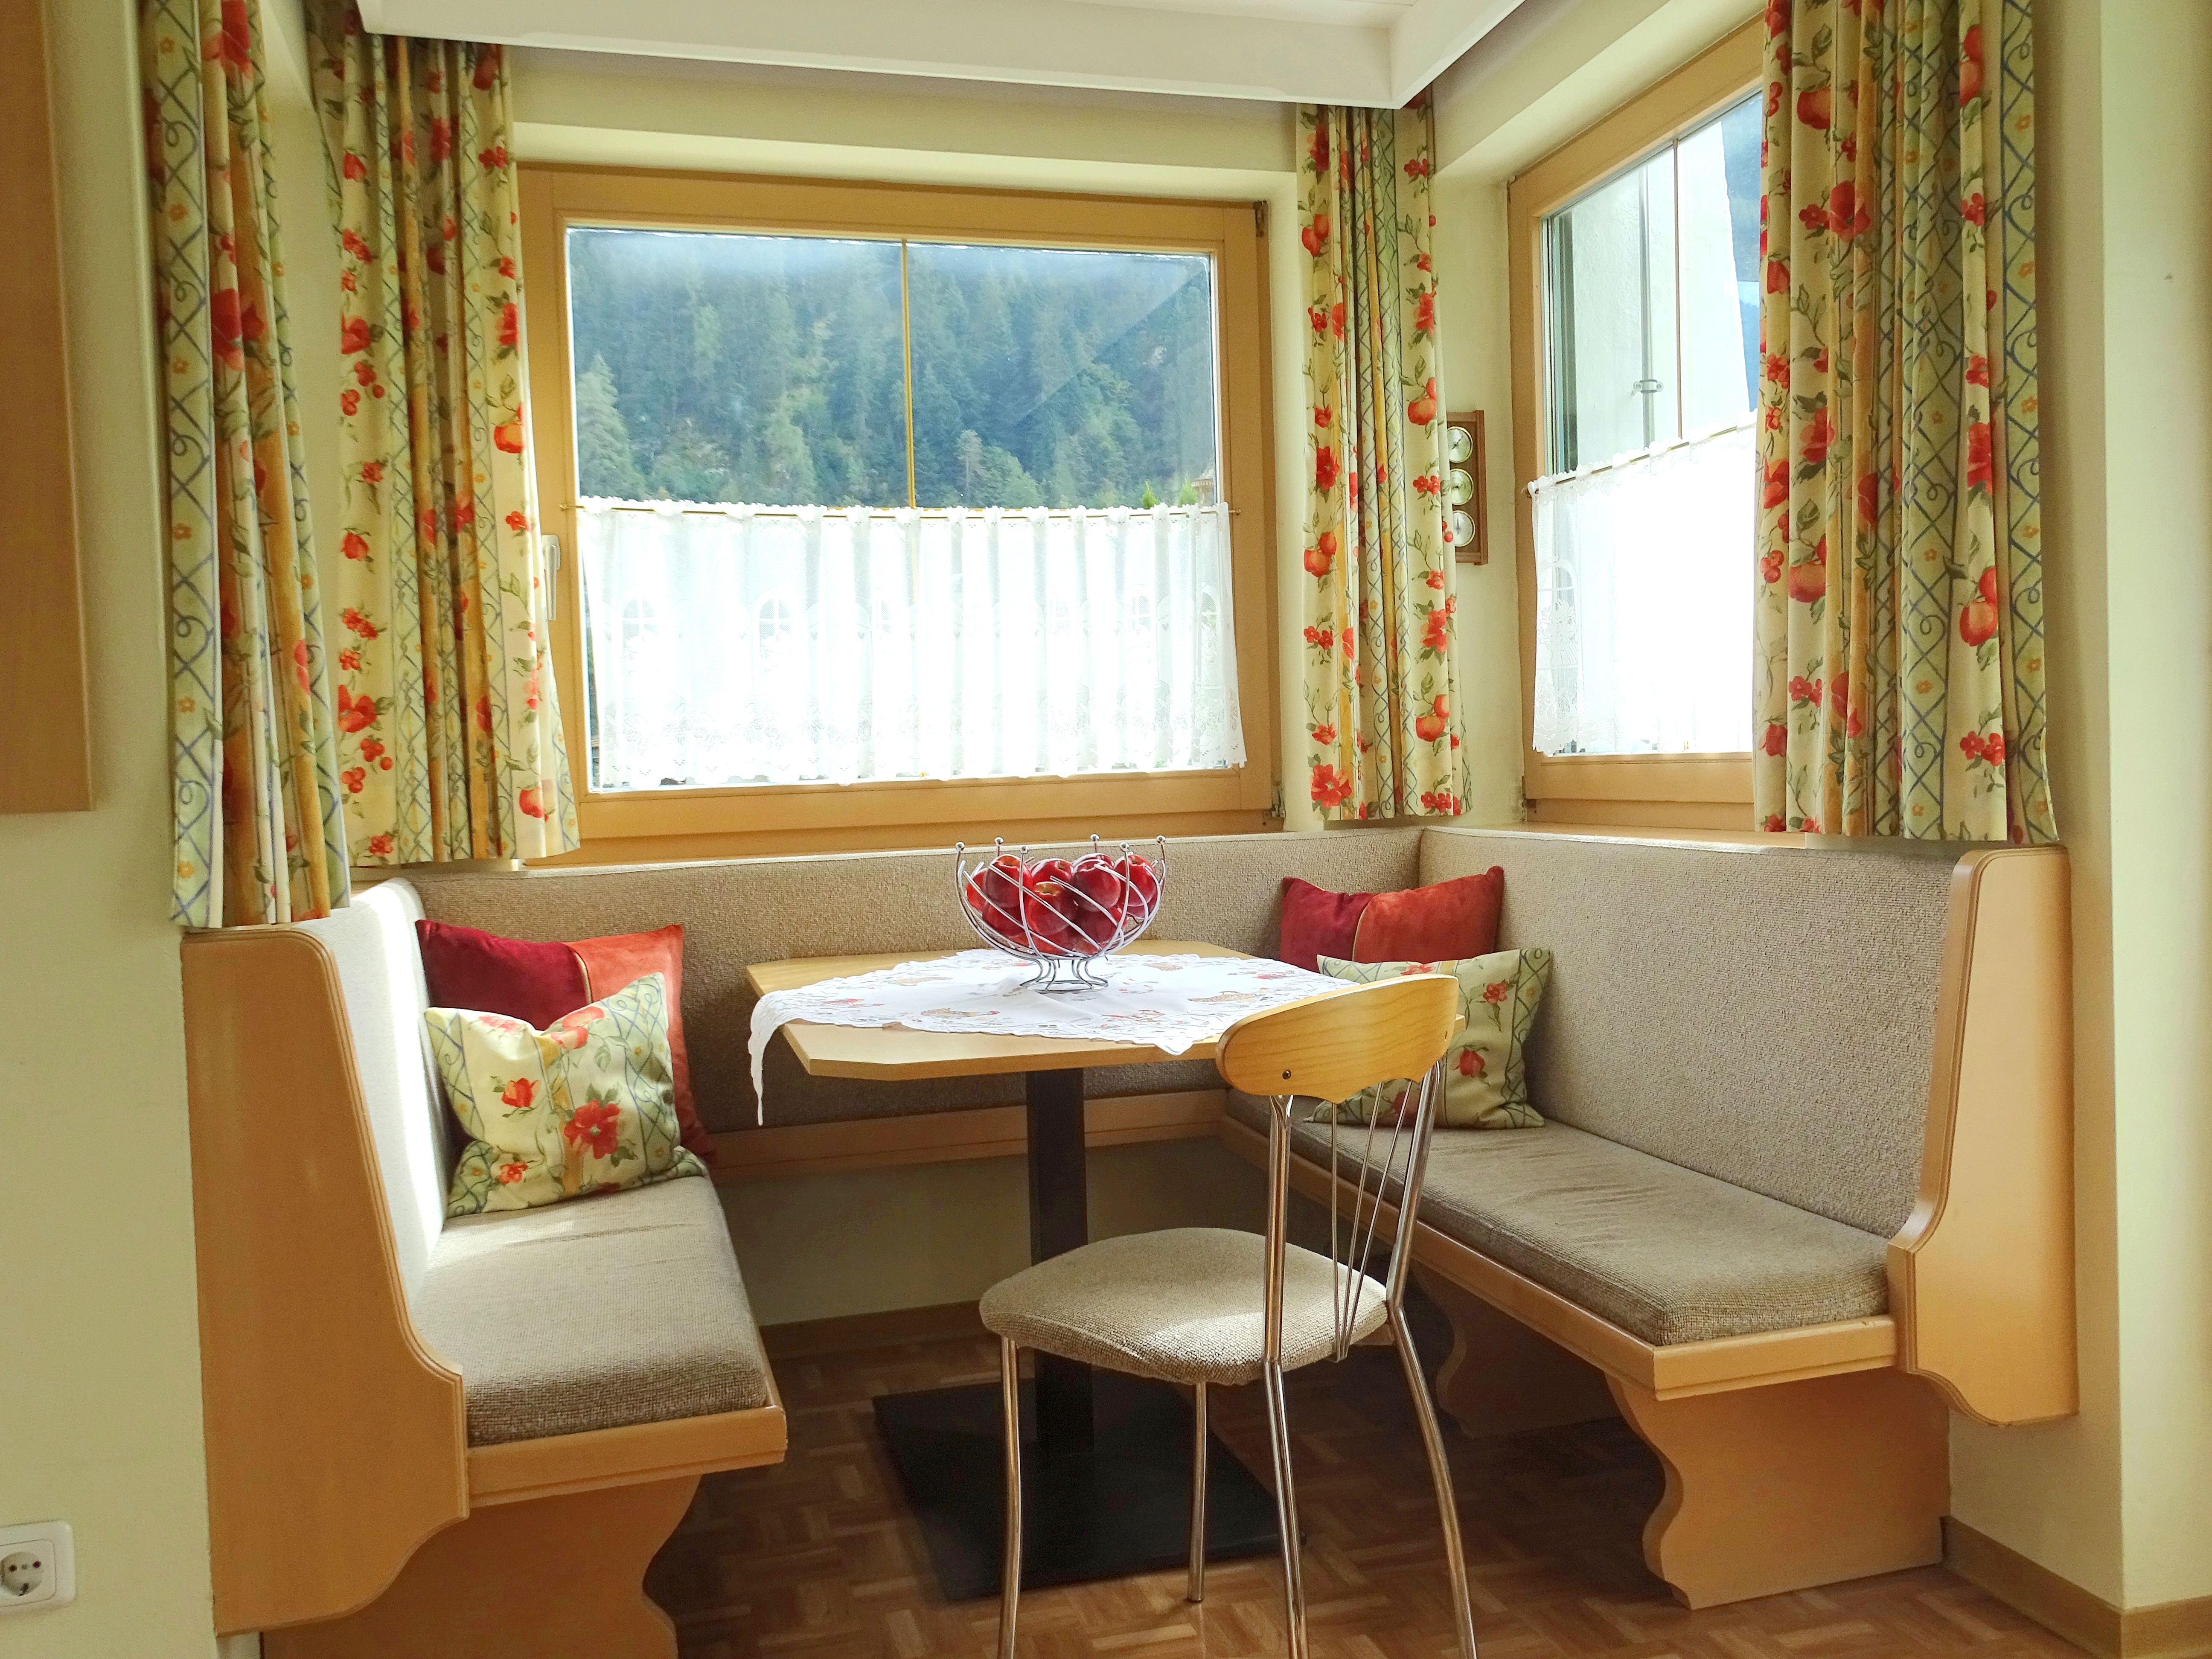 Appartementhaus Zillertal: Ferienwohnung für 3 Personen - Essecke (Beispiel)